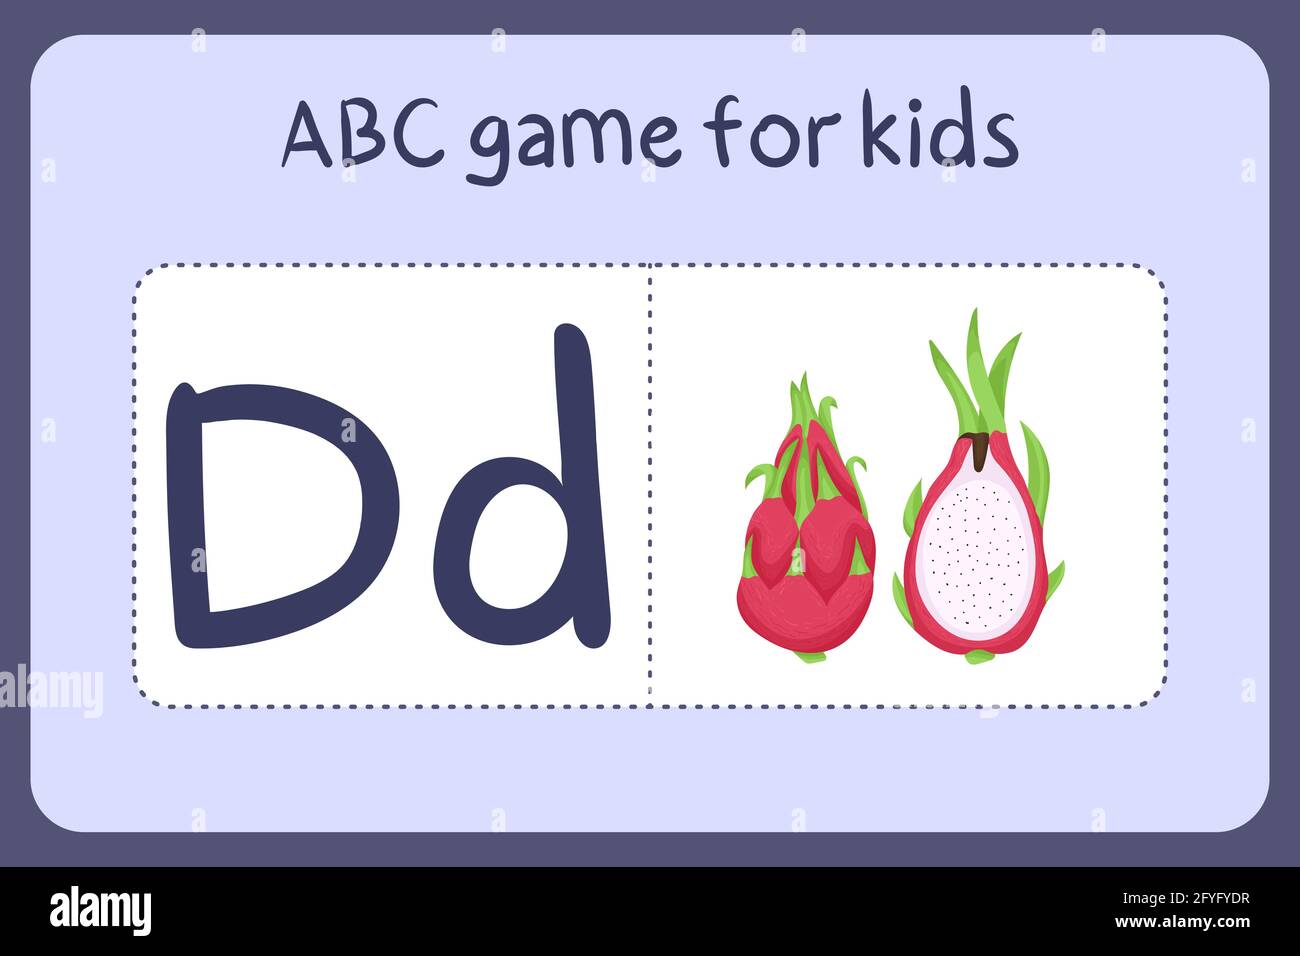 Kind Alphabet Mini-Spiele im Cartoon-Stil mit dem Buchstaben D - Drachenfrucht. Vektor-Illustration für Spiel-Design - Schneiden und spielen. Lerne abc mit Flash-Karten für Obst und Gemüse. Stock Vektor